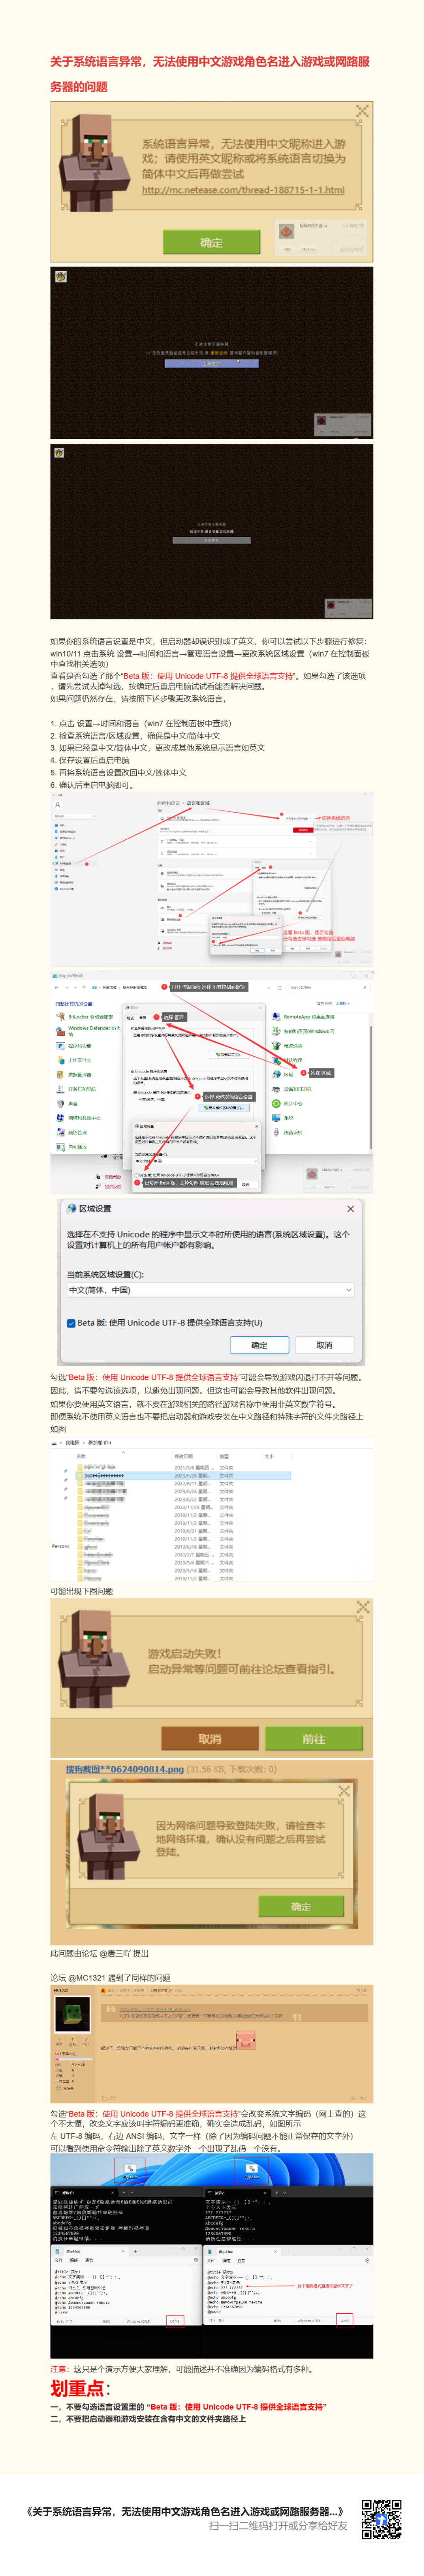 关于系统语言异常，无法使用中文游戏角色名进入游戏或网路服务器的问题 .png